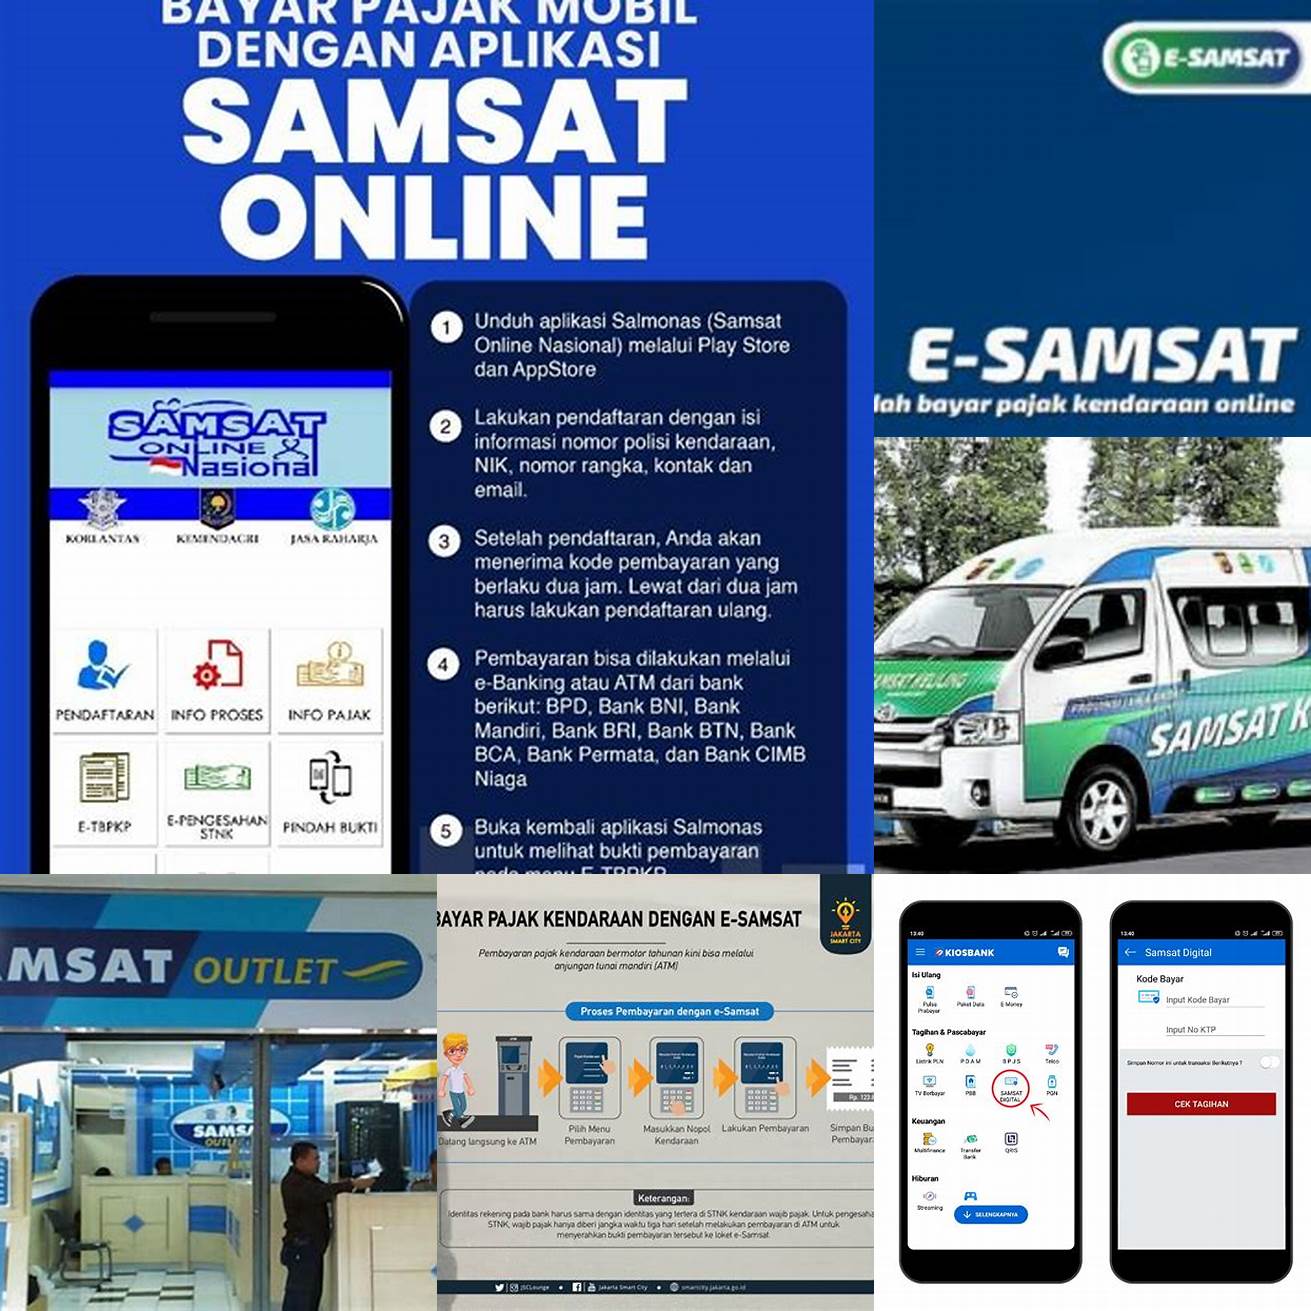 1 Kunjungi situs web SAMSAT yang berada di wilayah anda